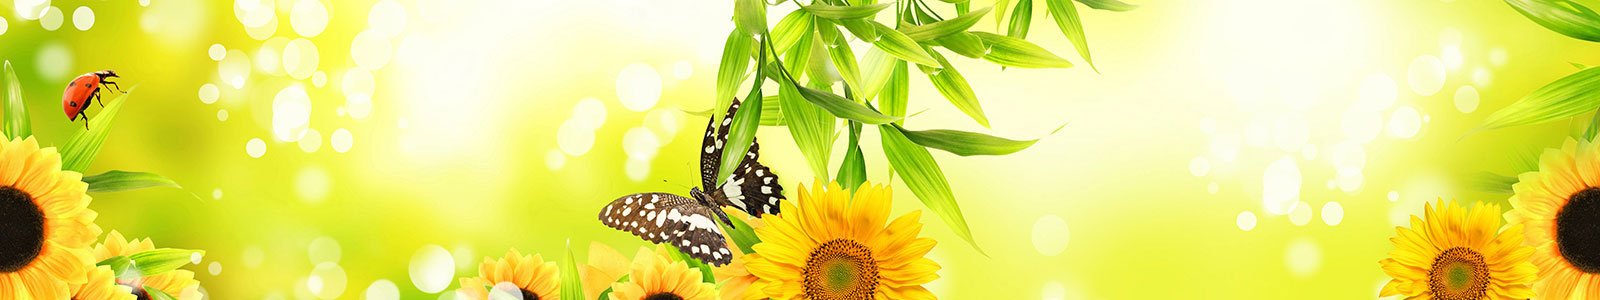 №5617 - Яркий солнечный фон с бабочкой и божьей коровкой в листьях